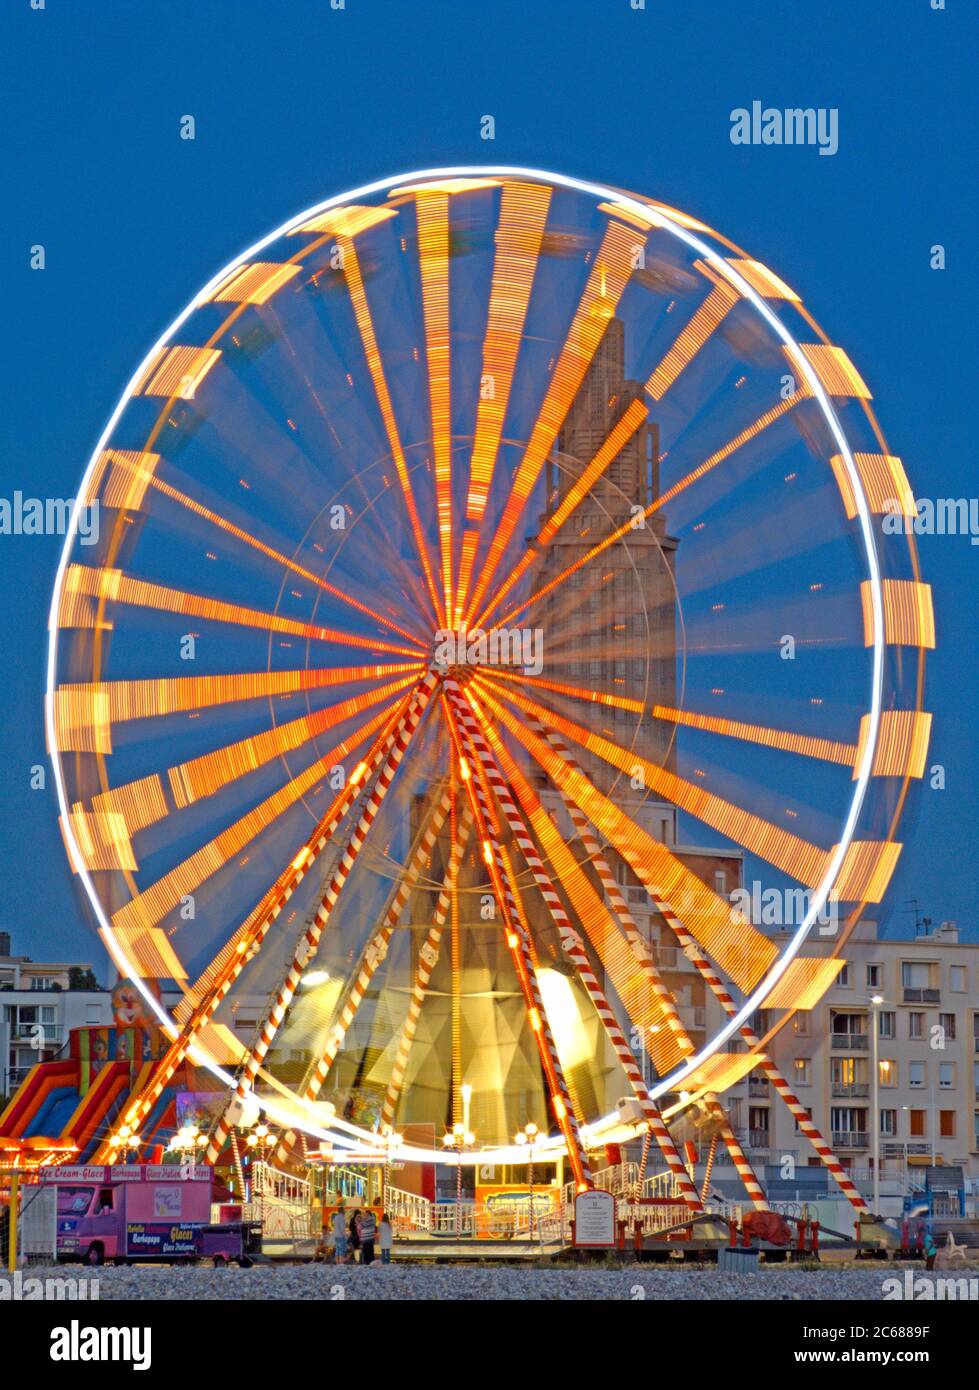 Exposition longue de la grande roue illuminée, le Havre, France Banque D'Images